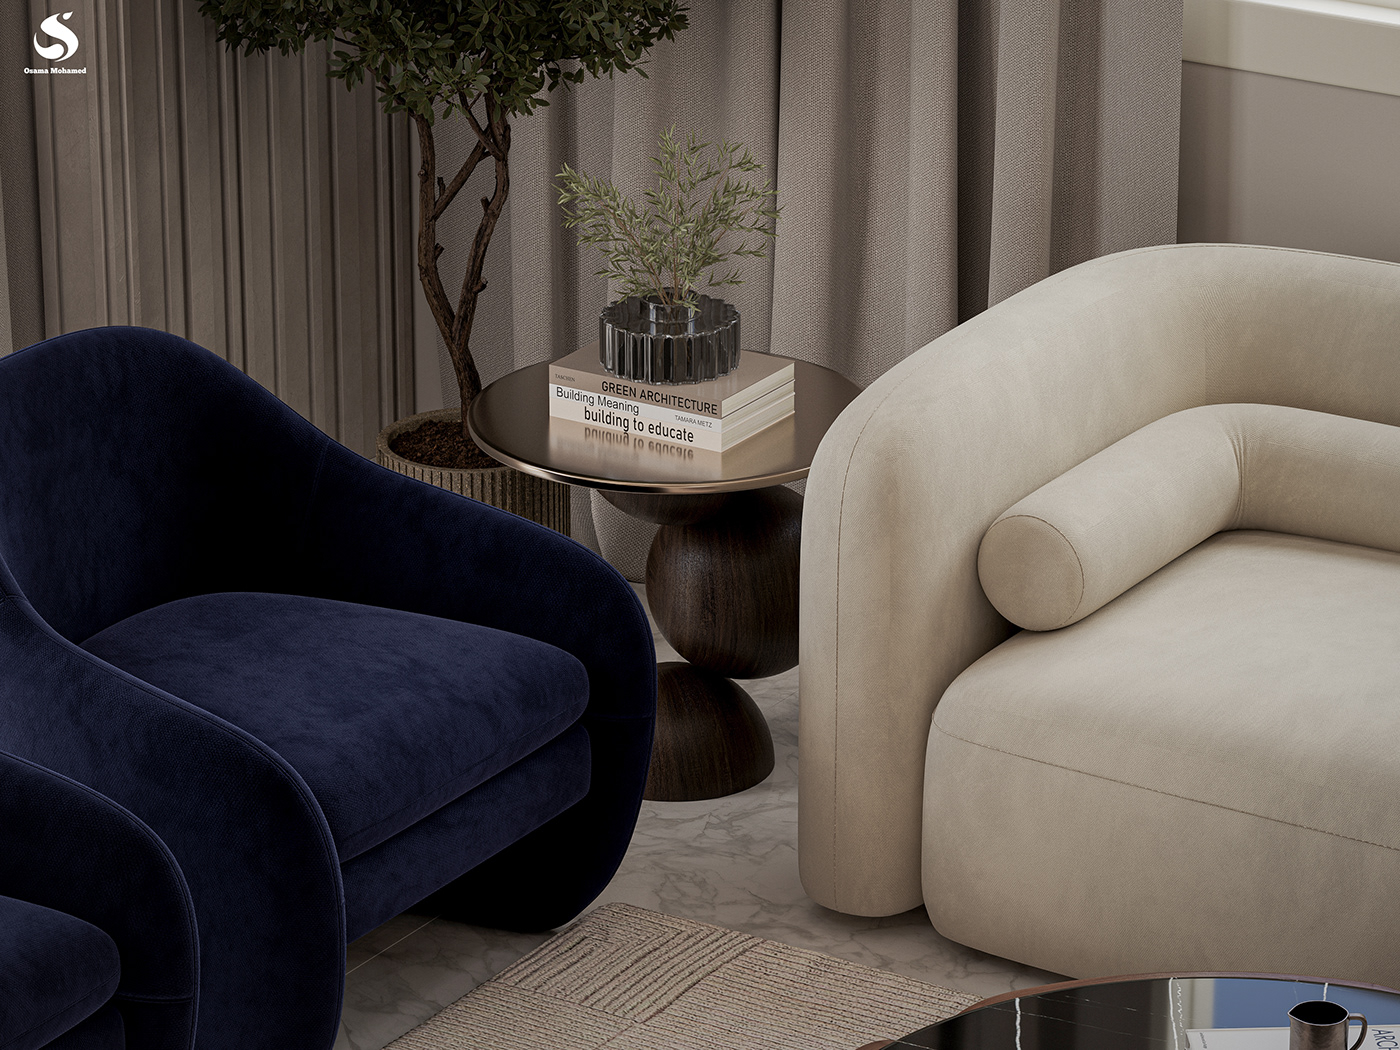 coffee table furniture interior design  architecture Render visualization corona modern 3ds max